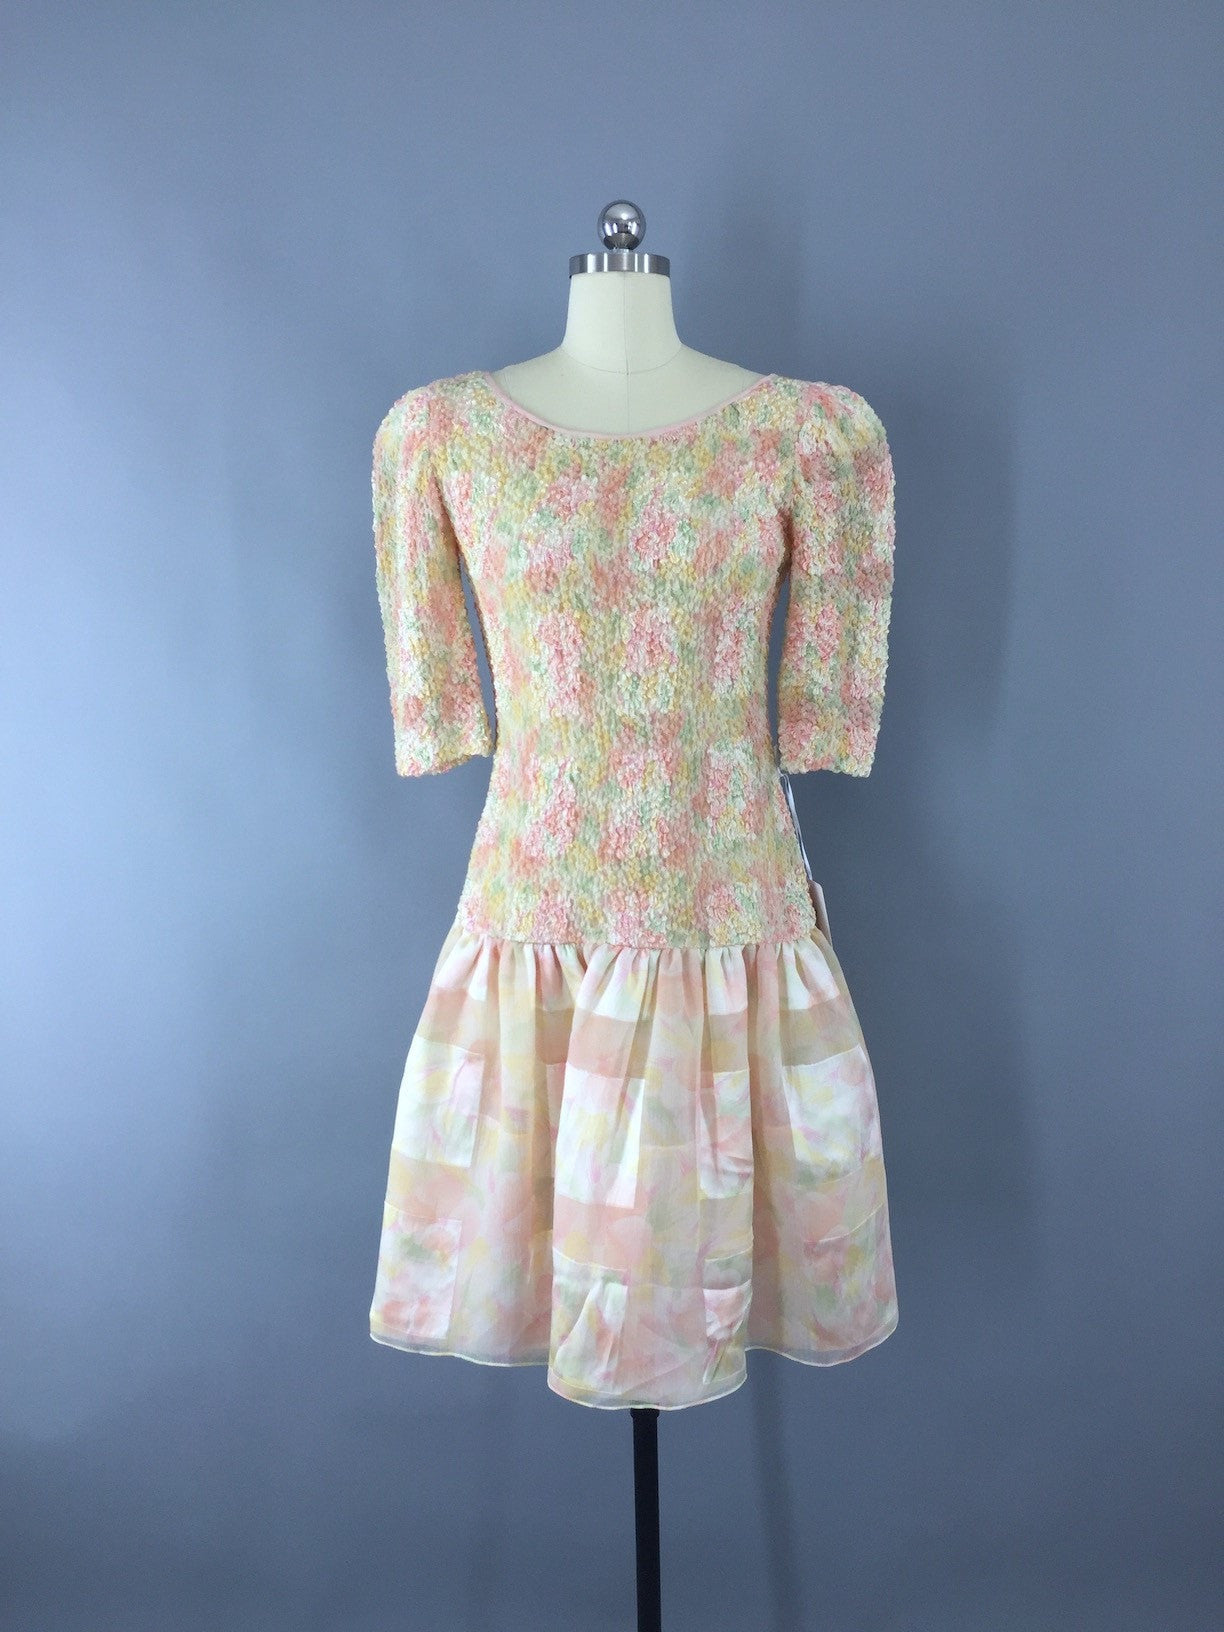 1980s Vintage Silk Dress by Annemarie Gardin - ThisBlueBird